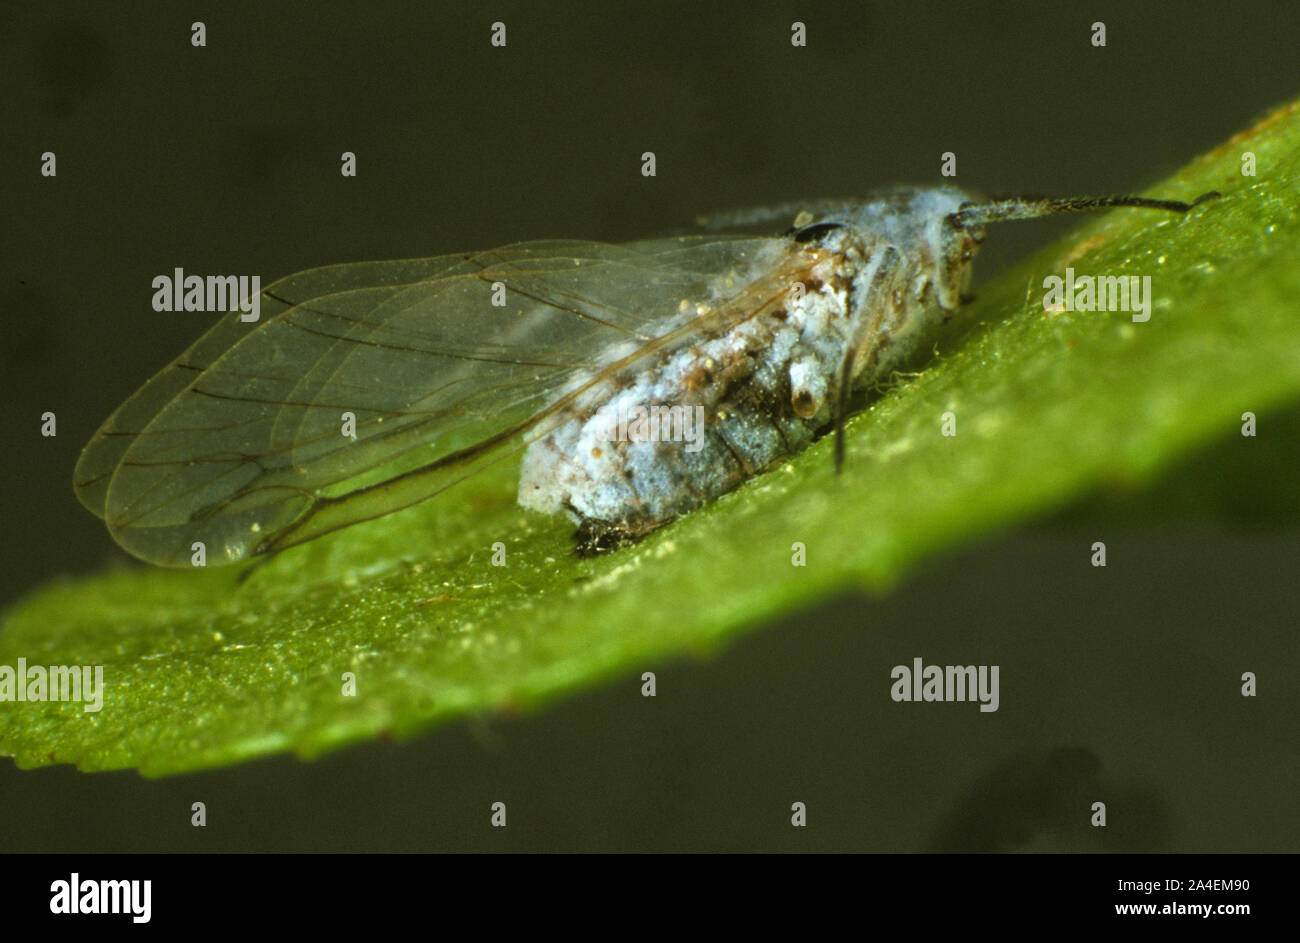 Un pulgón muerto por un hongos entomopatógenos (Verticillium lecanii), que se utiliza un método de control biológico en los cultivos protegidos. Foto de stock